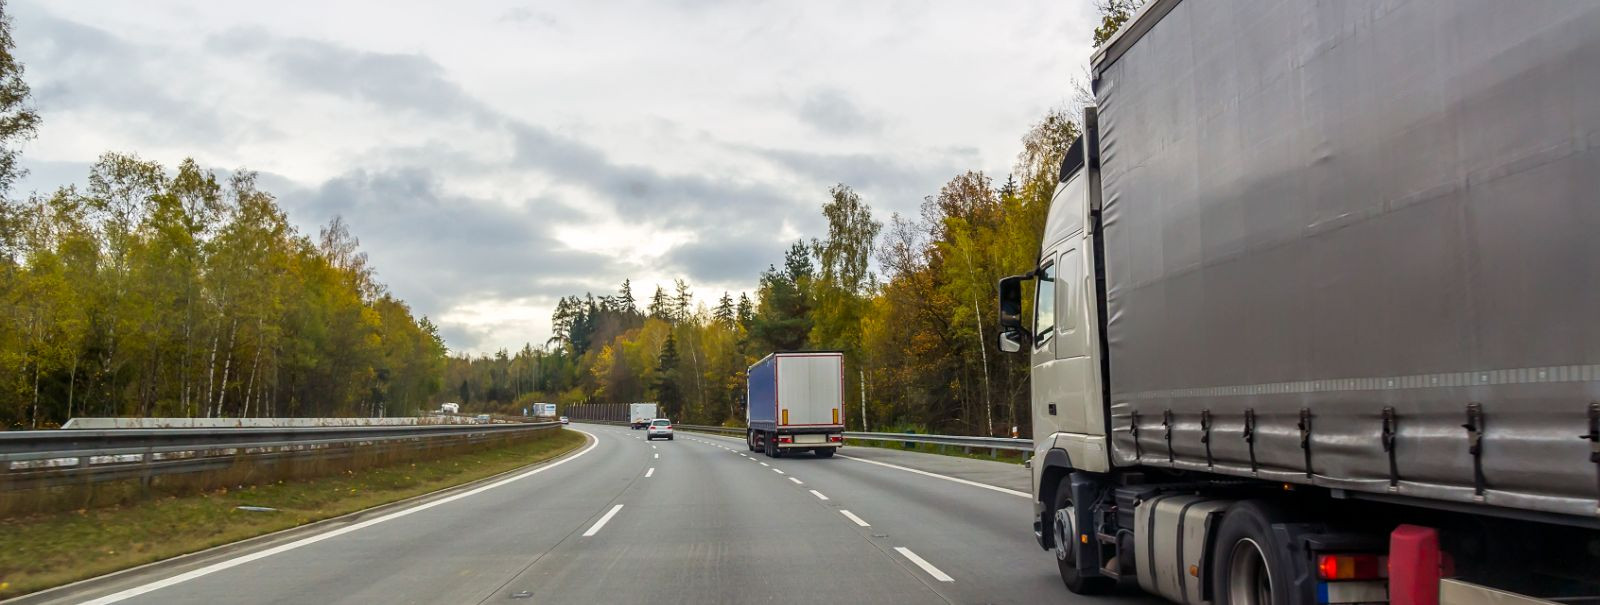 Kui vaatame transpordi- ja logistikasektorit, näeme pidevat arengut ja innovatsiooni, mis mõjutab kaubavedu maanteel. ZALBAND OÜ kui teie usaldusväärne partner 